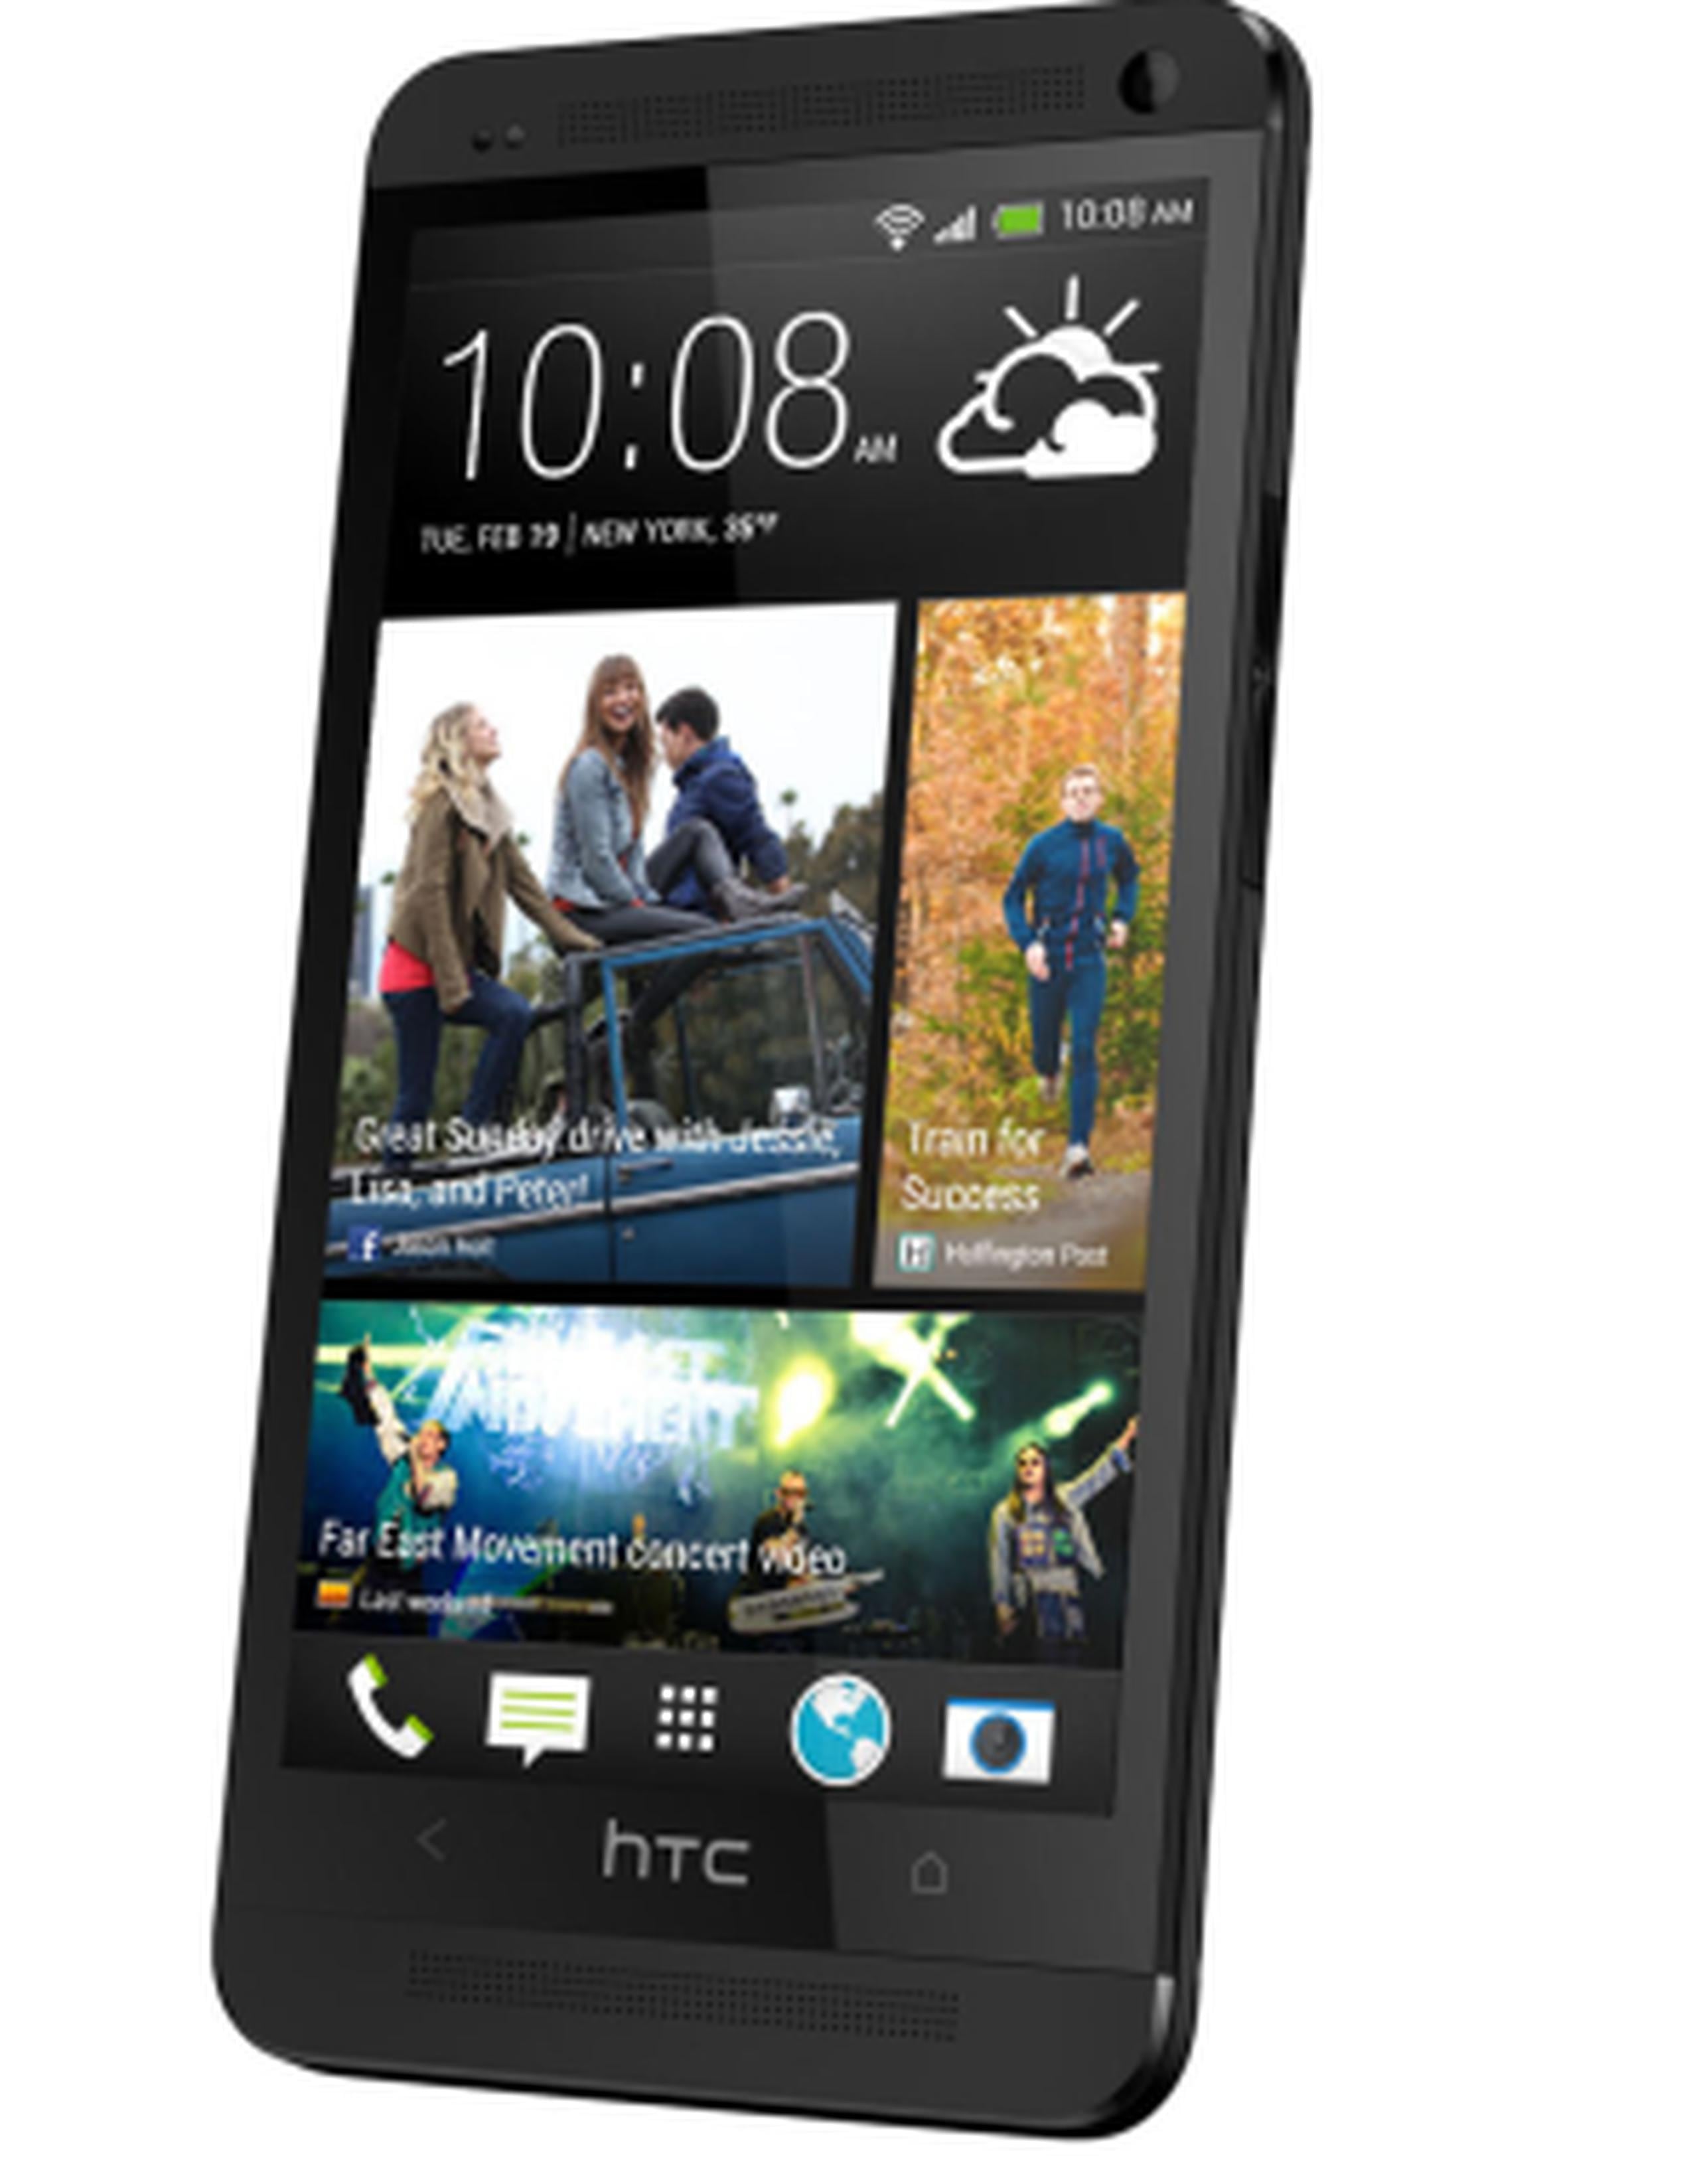 El HTC One LTE incluye una pantalla táctil de 4.7”, Full HD 1080 para imágenes de alta calidad y dos altavoces estéreo frontales.  (Suministrada)